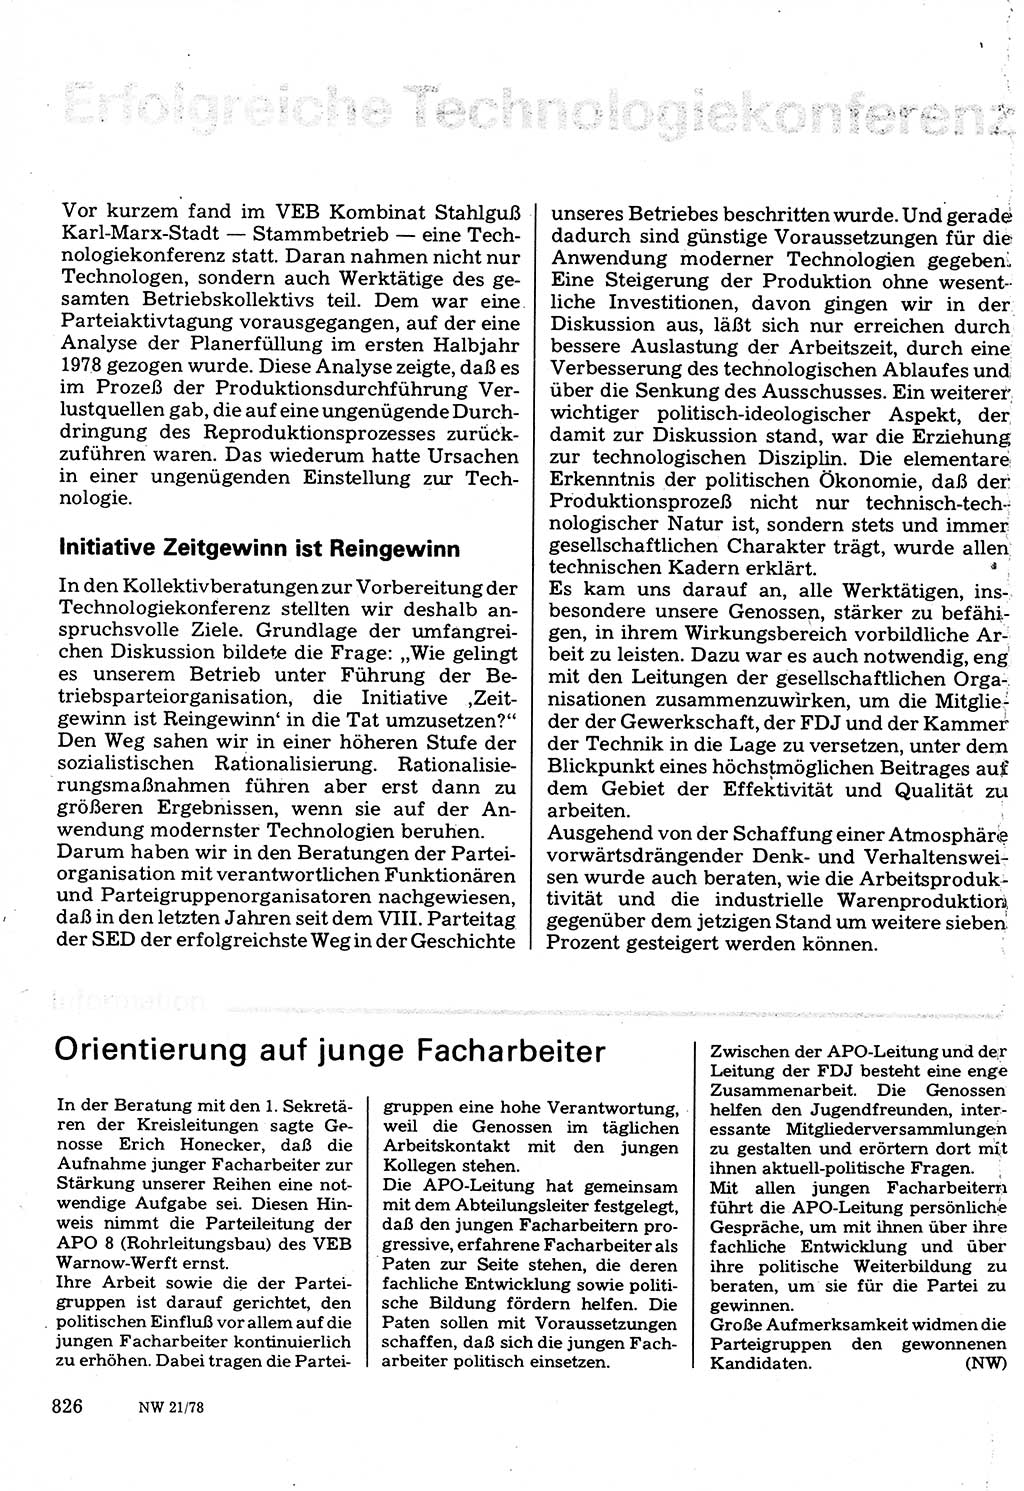 Neuer Weg (NW), Organ des Zentralkomitees (ZK) der SED (Sozialistische Einheitspartei Deutschlands) für Fragen des Parteilebens, 33. Jahrgang [Deutsche Demokratische Republik (DDR)] 1978, Seite 826 (NW ZK SED DDR 1978, S. 826)